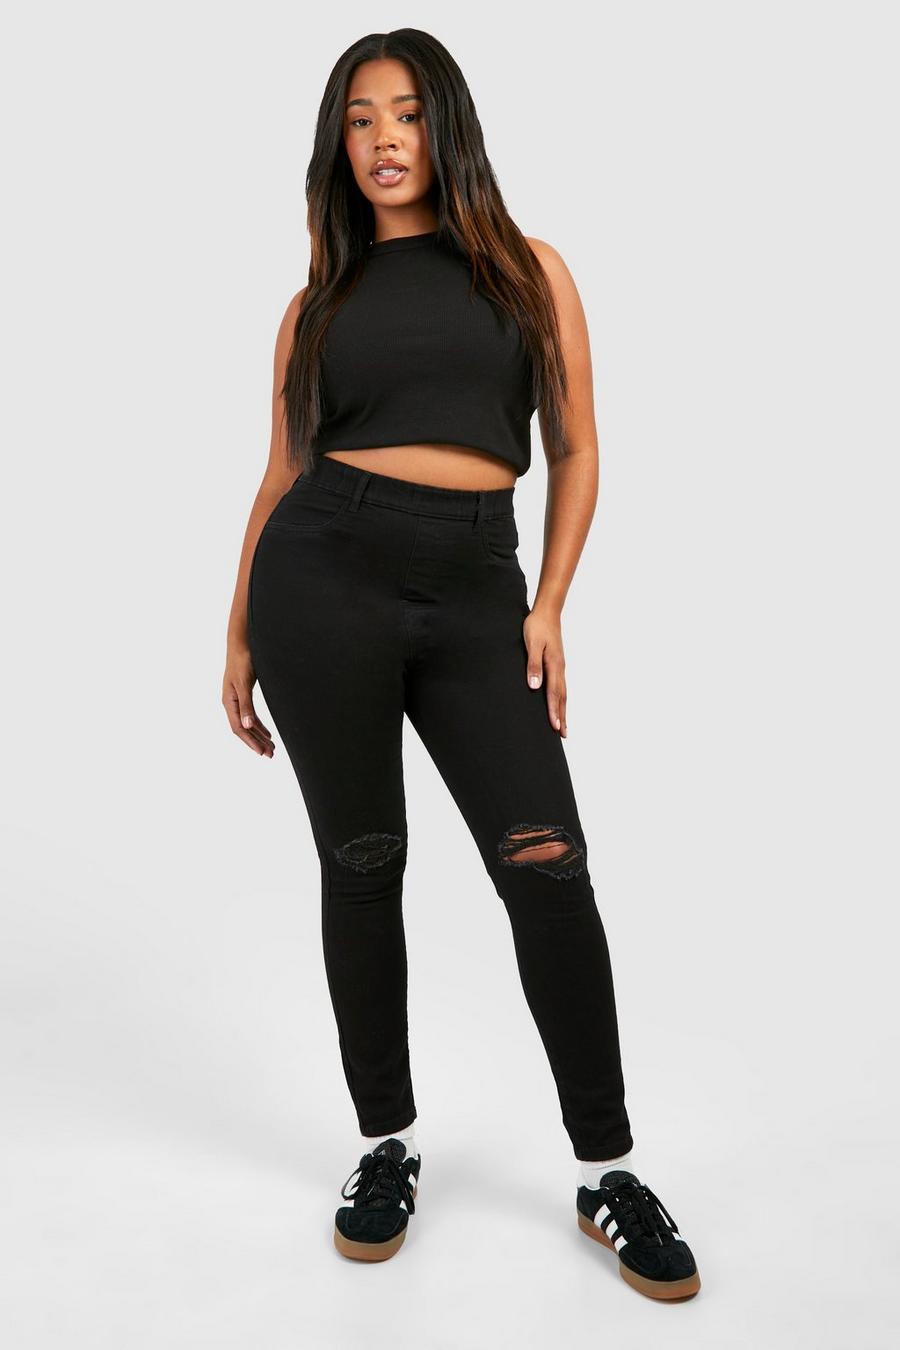 שחור nero טייץ ג'ינס סקיני עם קרע בברך מידות גדולות